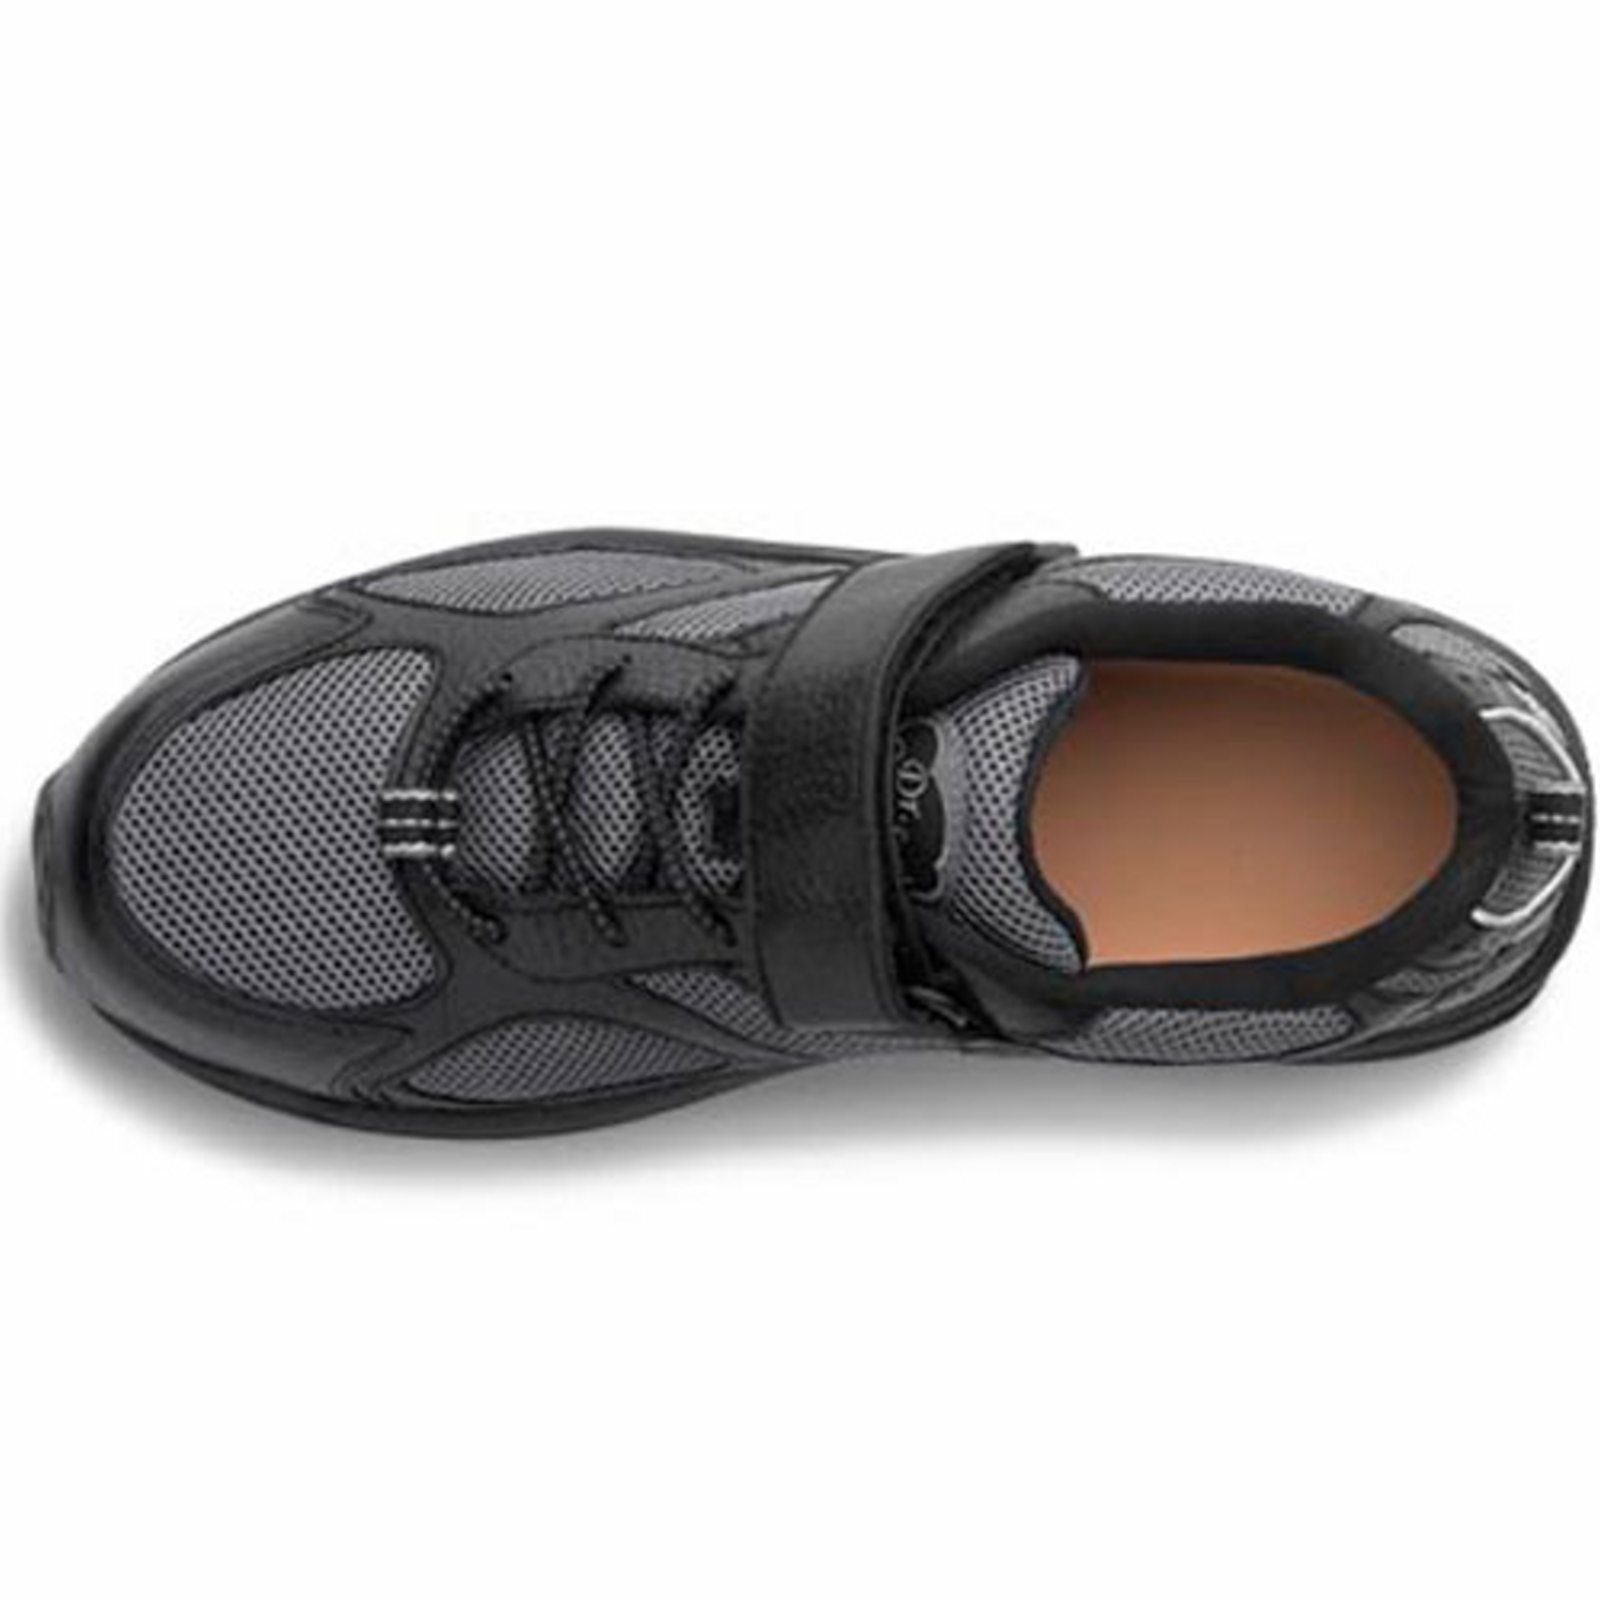 Dr. Comfort Endurance Men's Athletic Shoe: 12 Wide (E/2E) Black Elastic Lace w/Strap - image 5 of 5